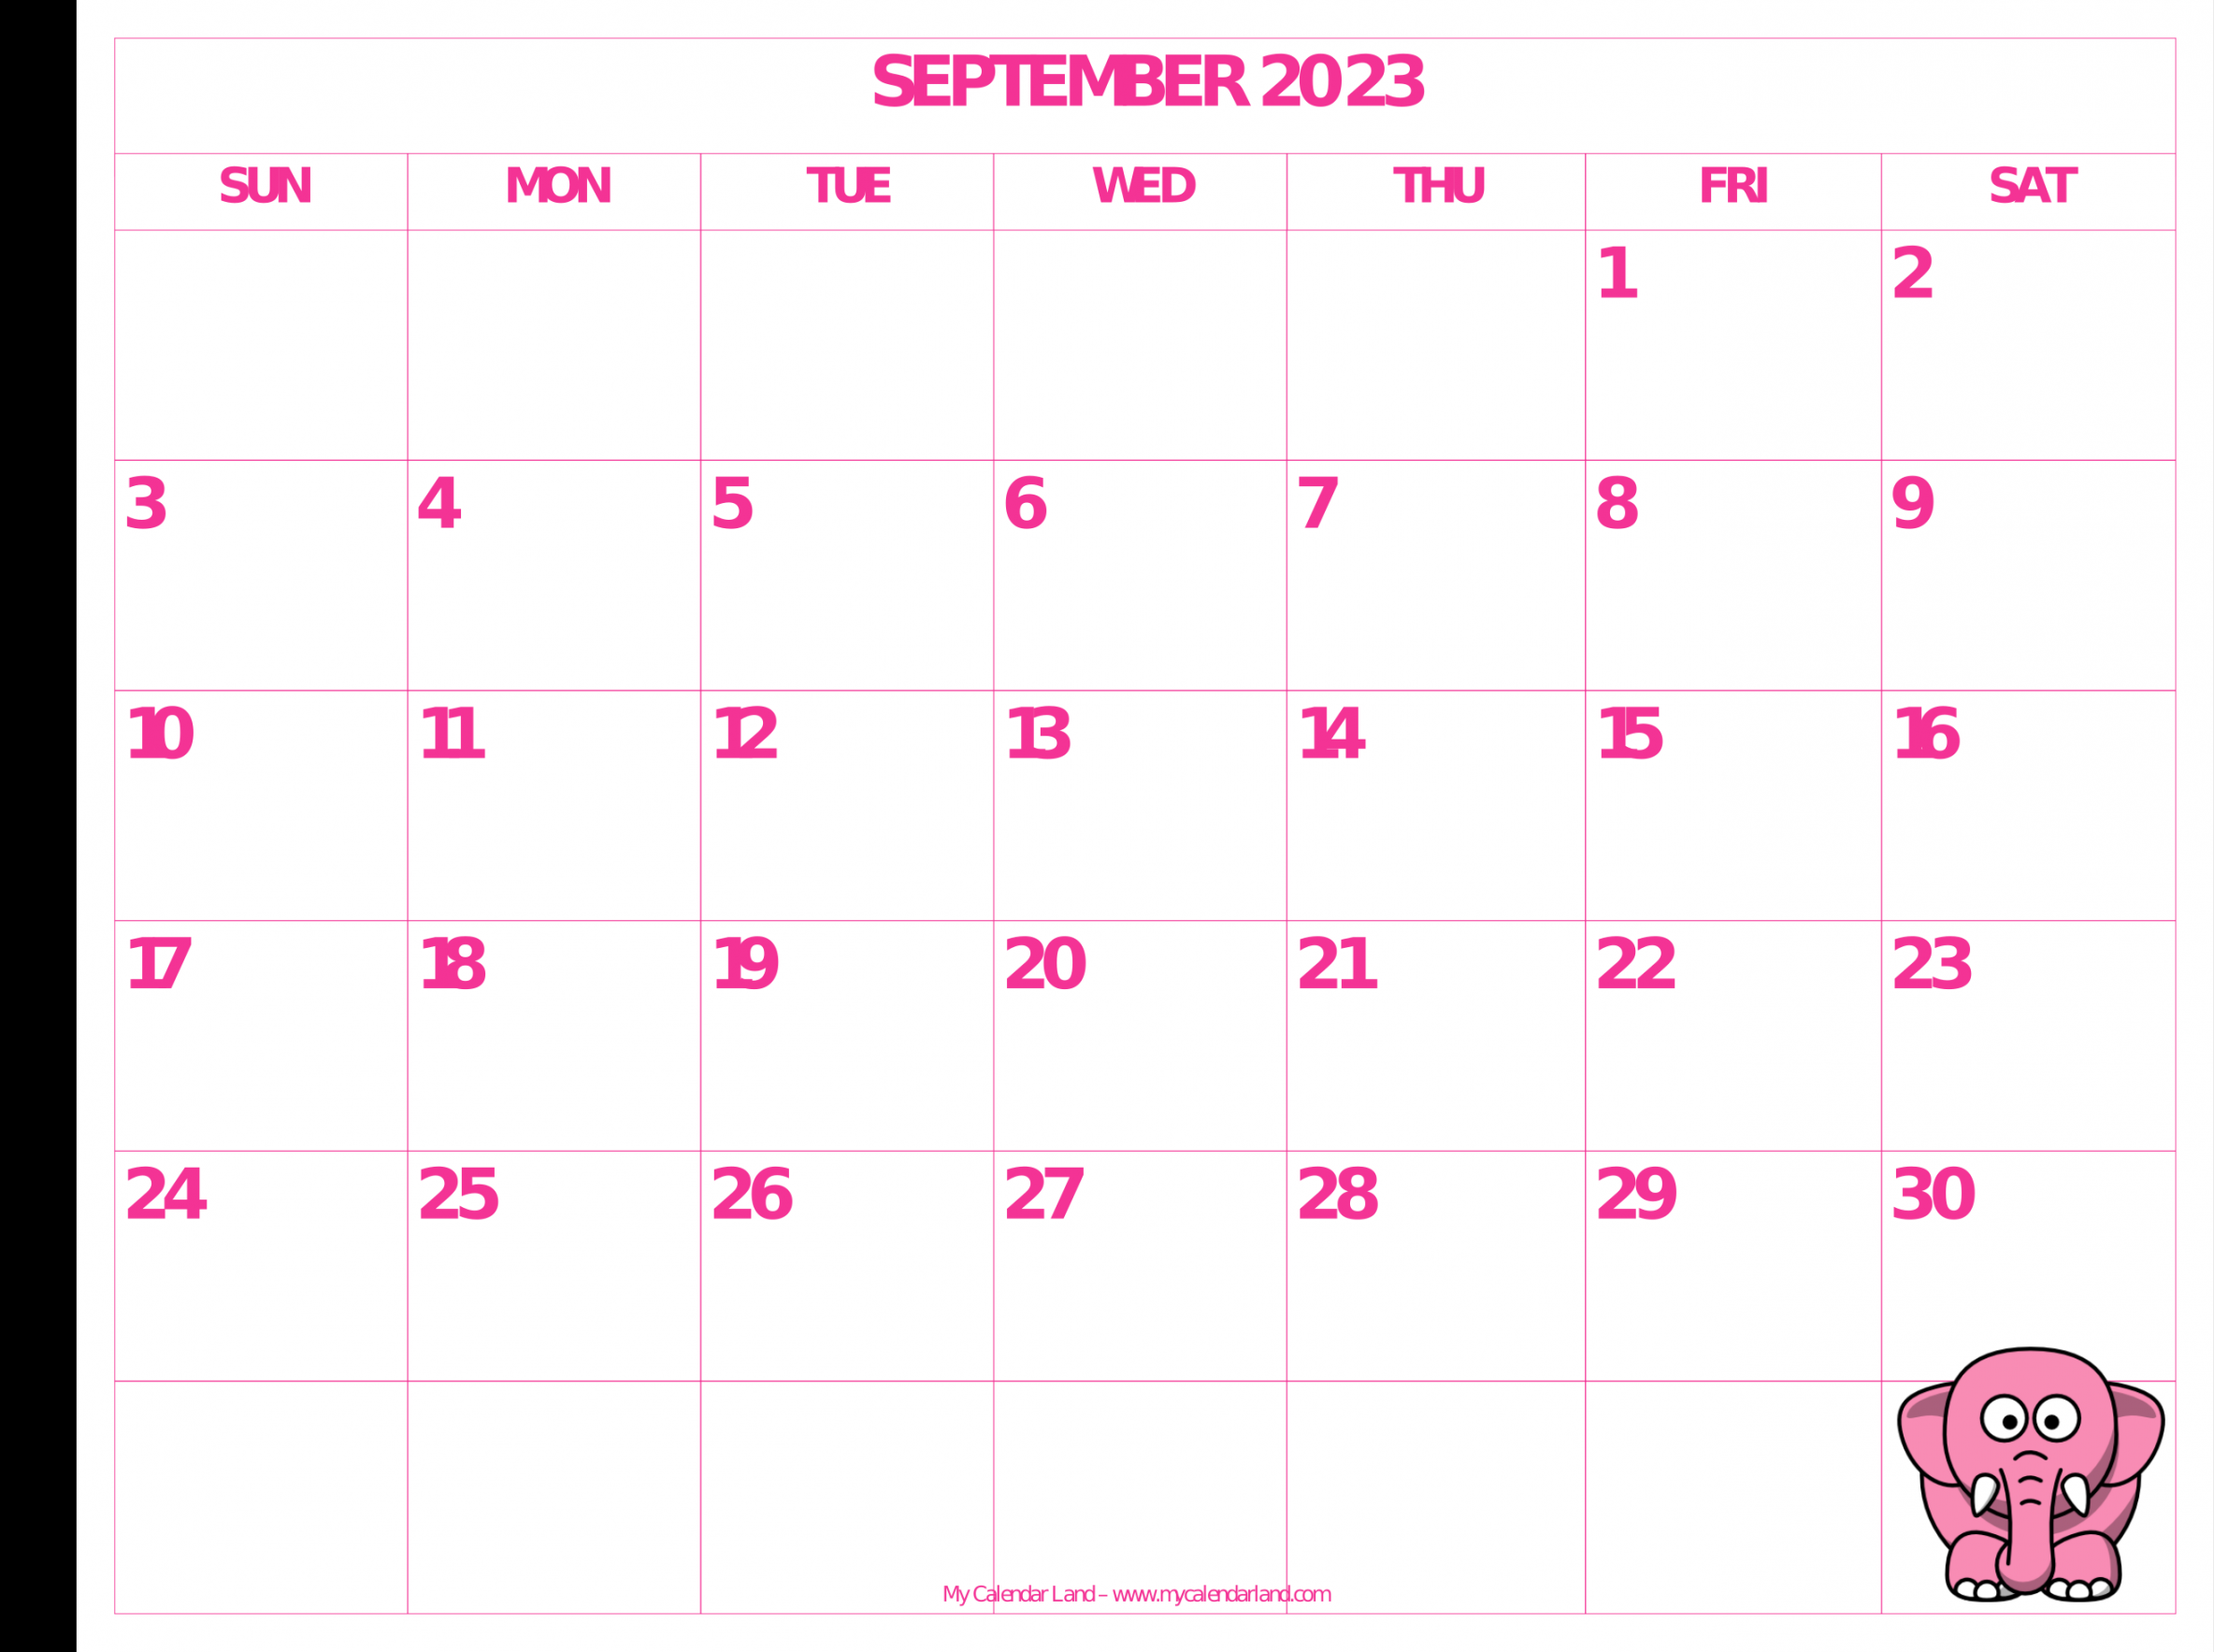 September  Calendar - My Calendar Land